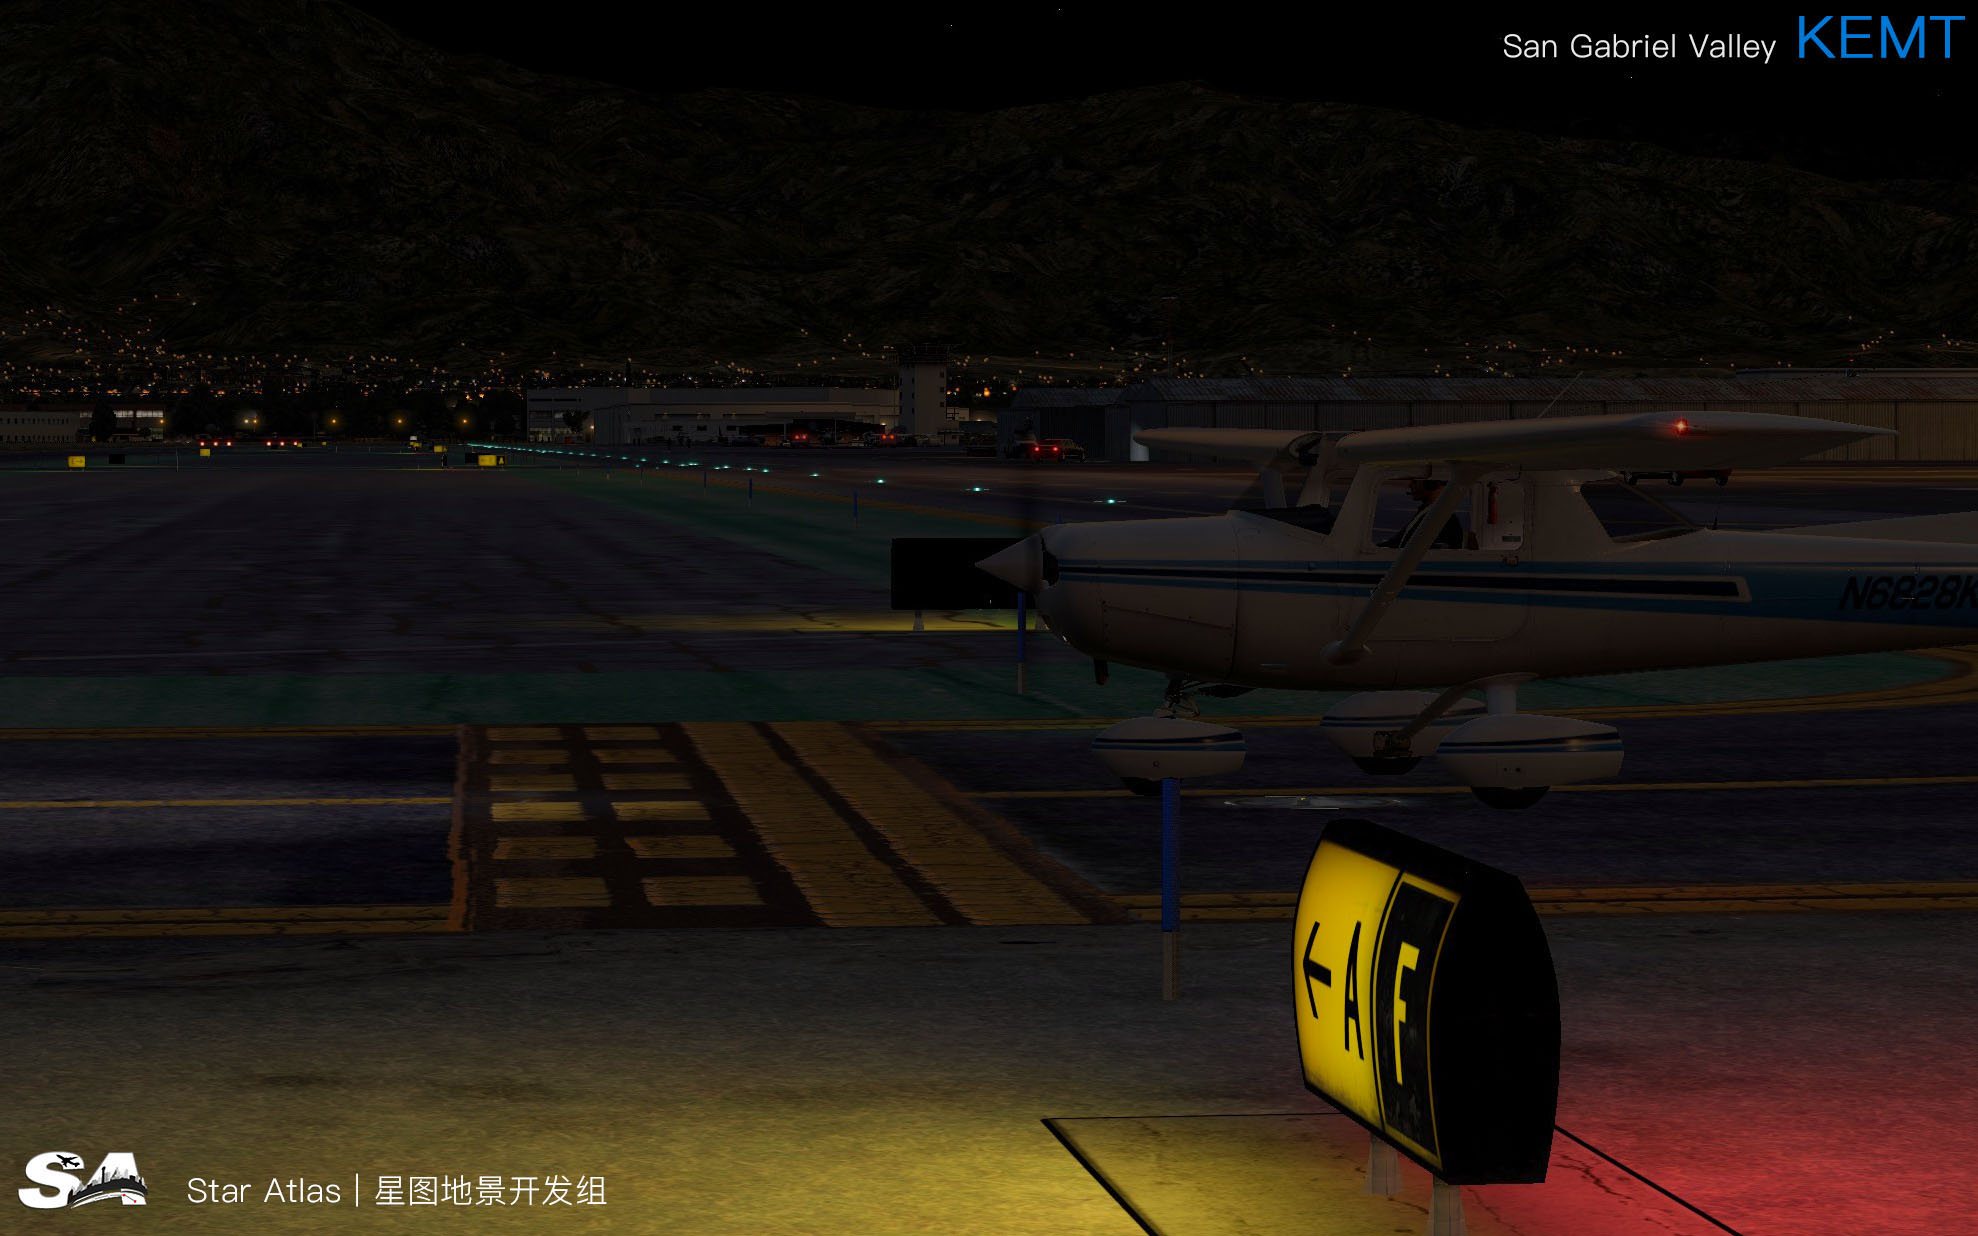 【X-Plane】KEMT-圣盖博谷机场 HD 1.0-1602 